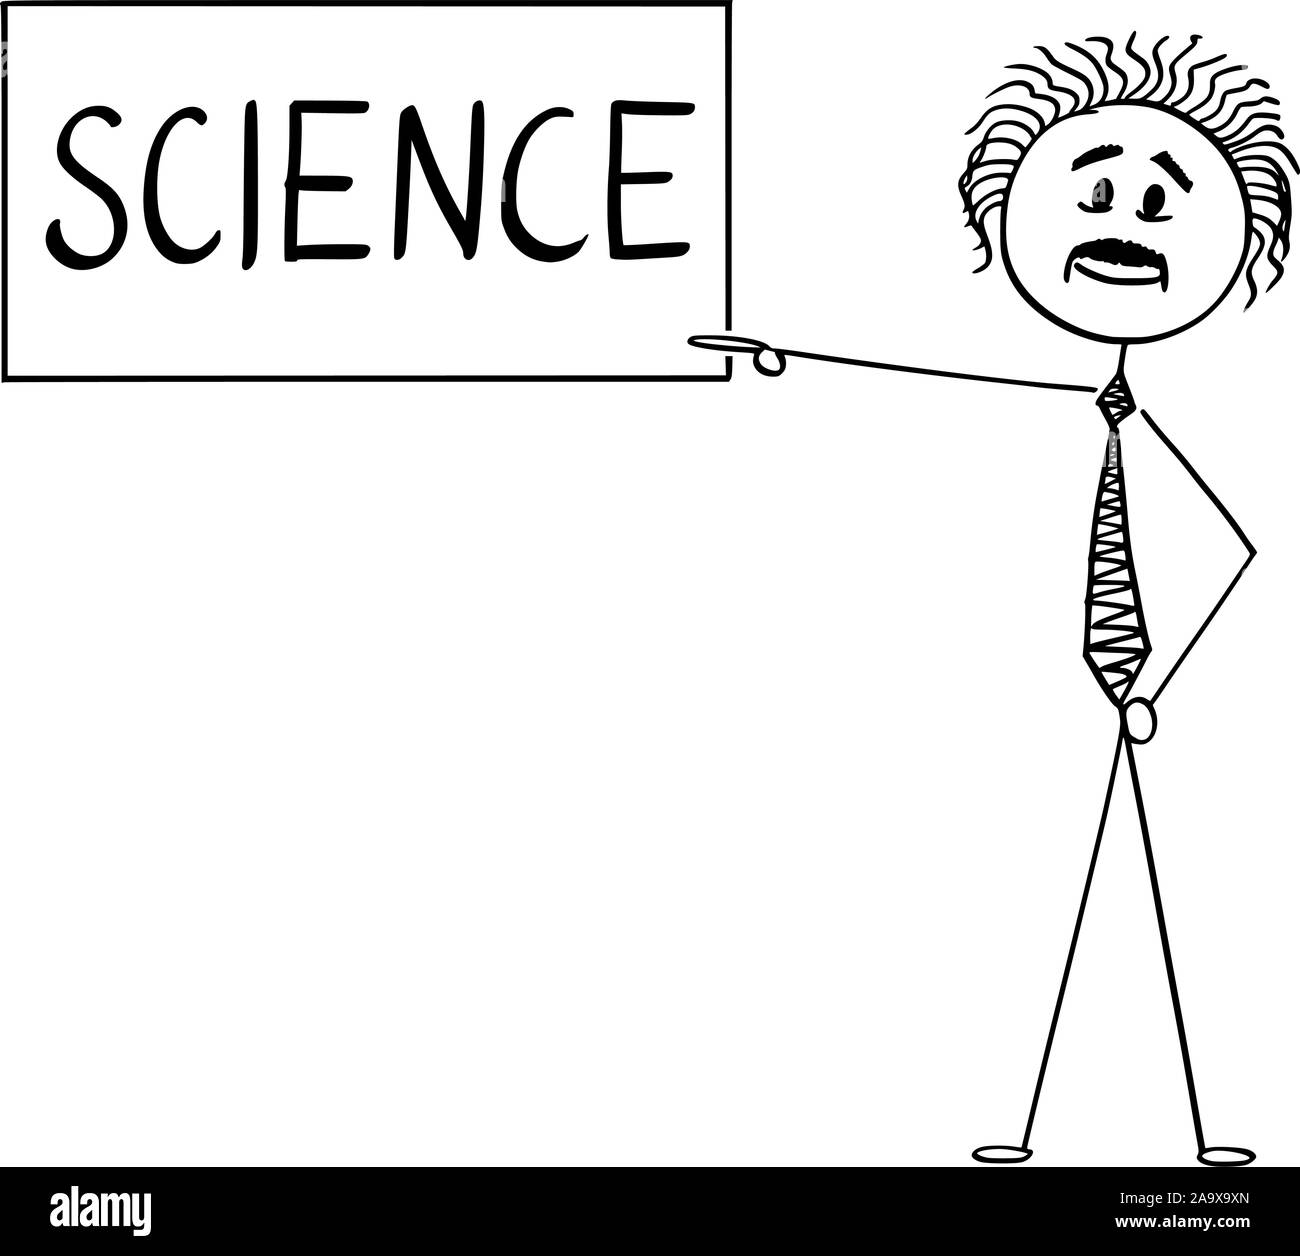 Vektor cartoon Strichmännchen Zeichnen konzeptionelle Darstellung der Wissenschaftler Albert Einstein, der auf Wissenschaft Text zu unterzeichnen. Stock Vektor